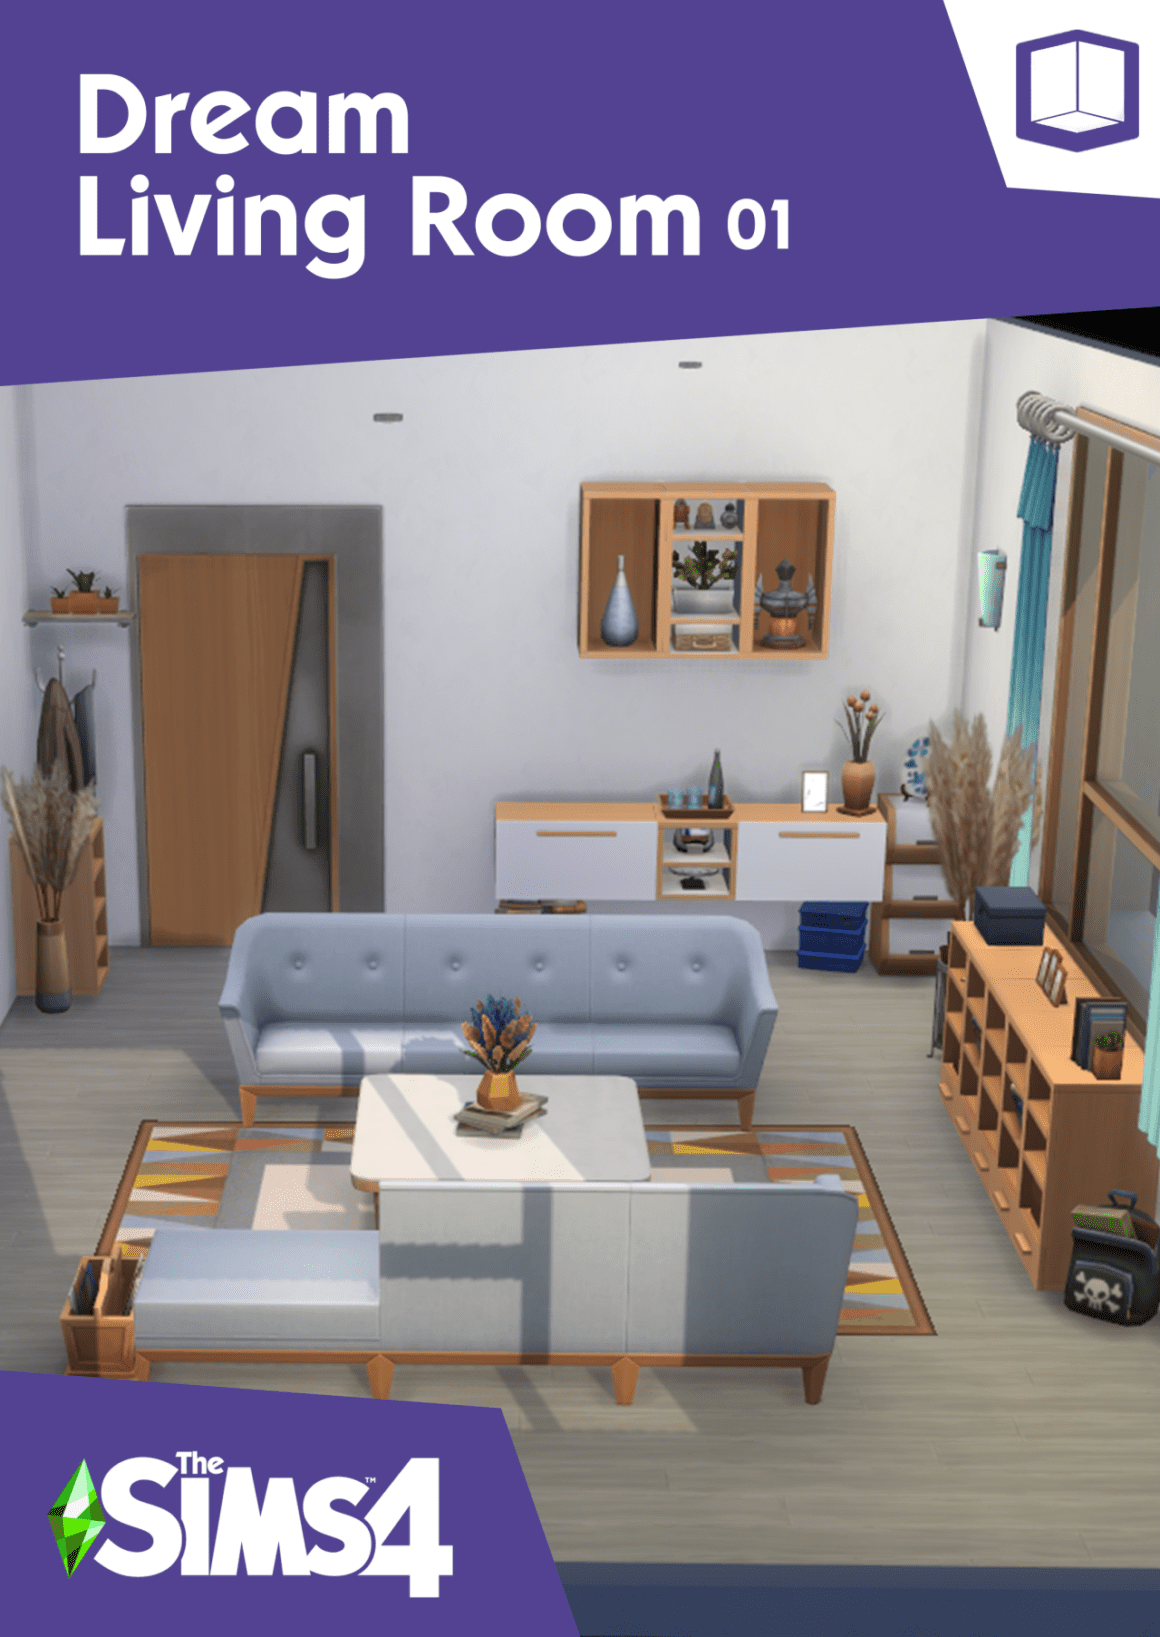 Dream livining room 01